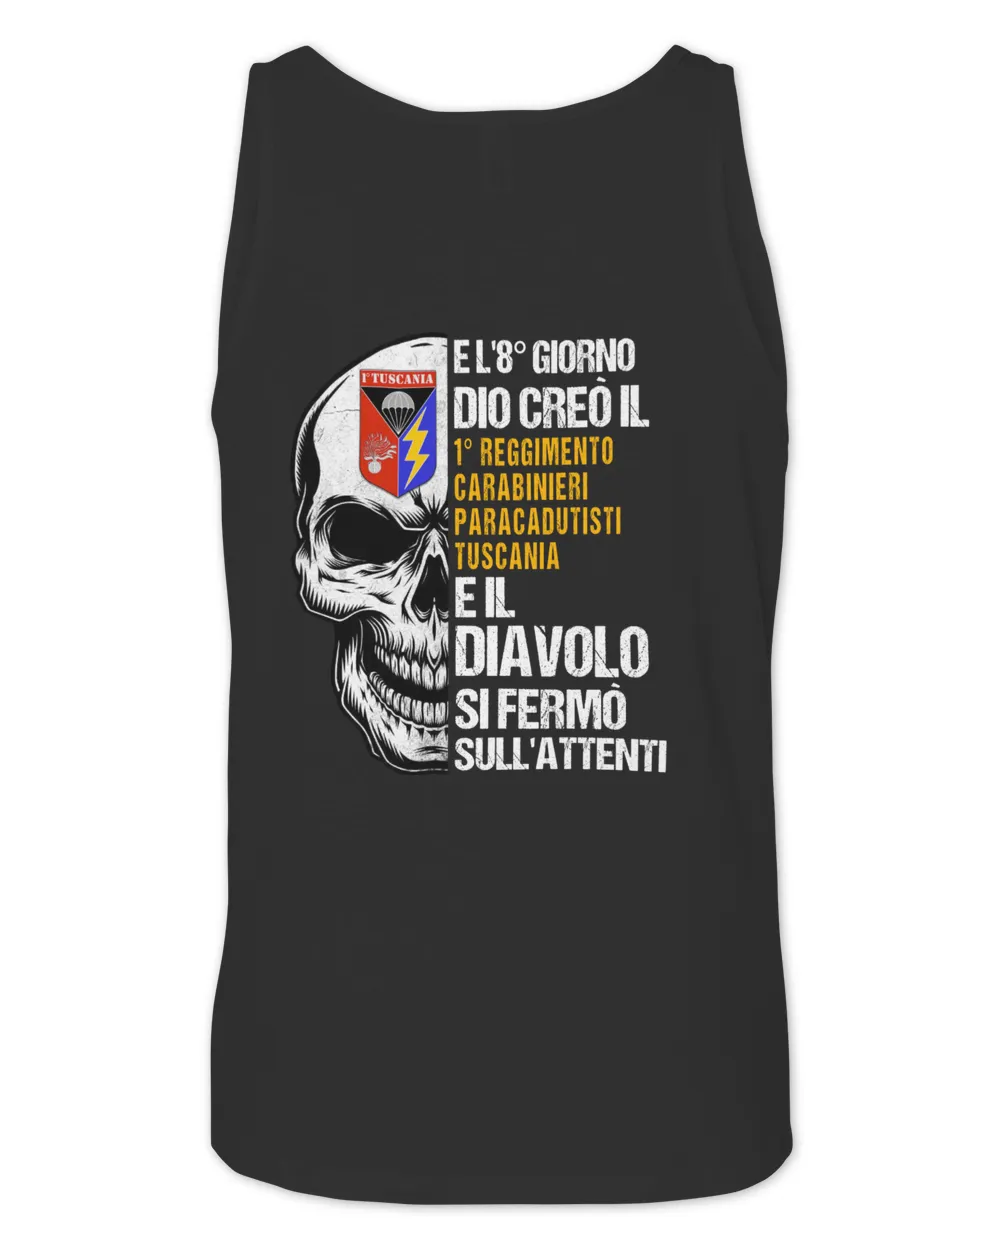 1° Reggimento Carabinieri Paracadutisti Tuscania